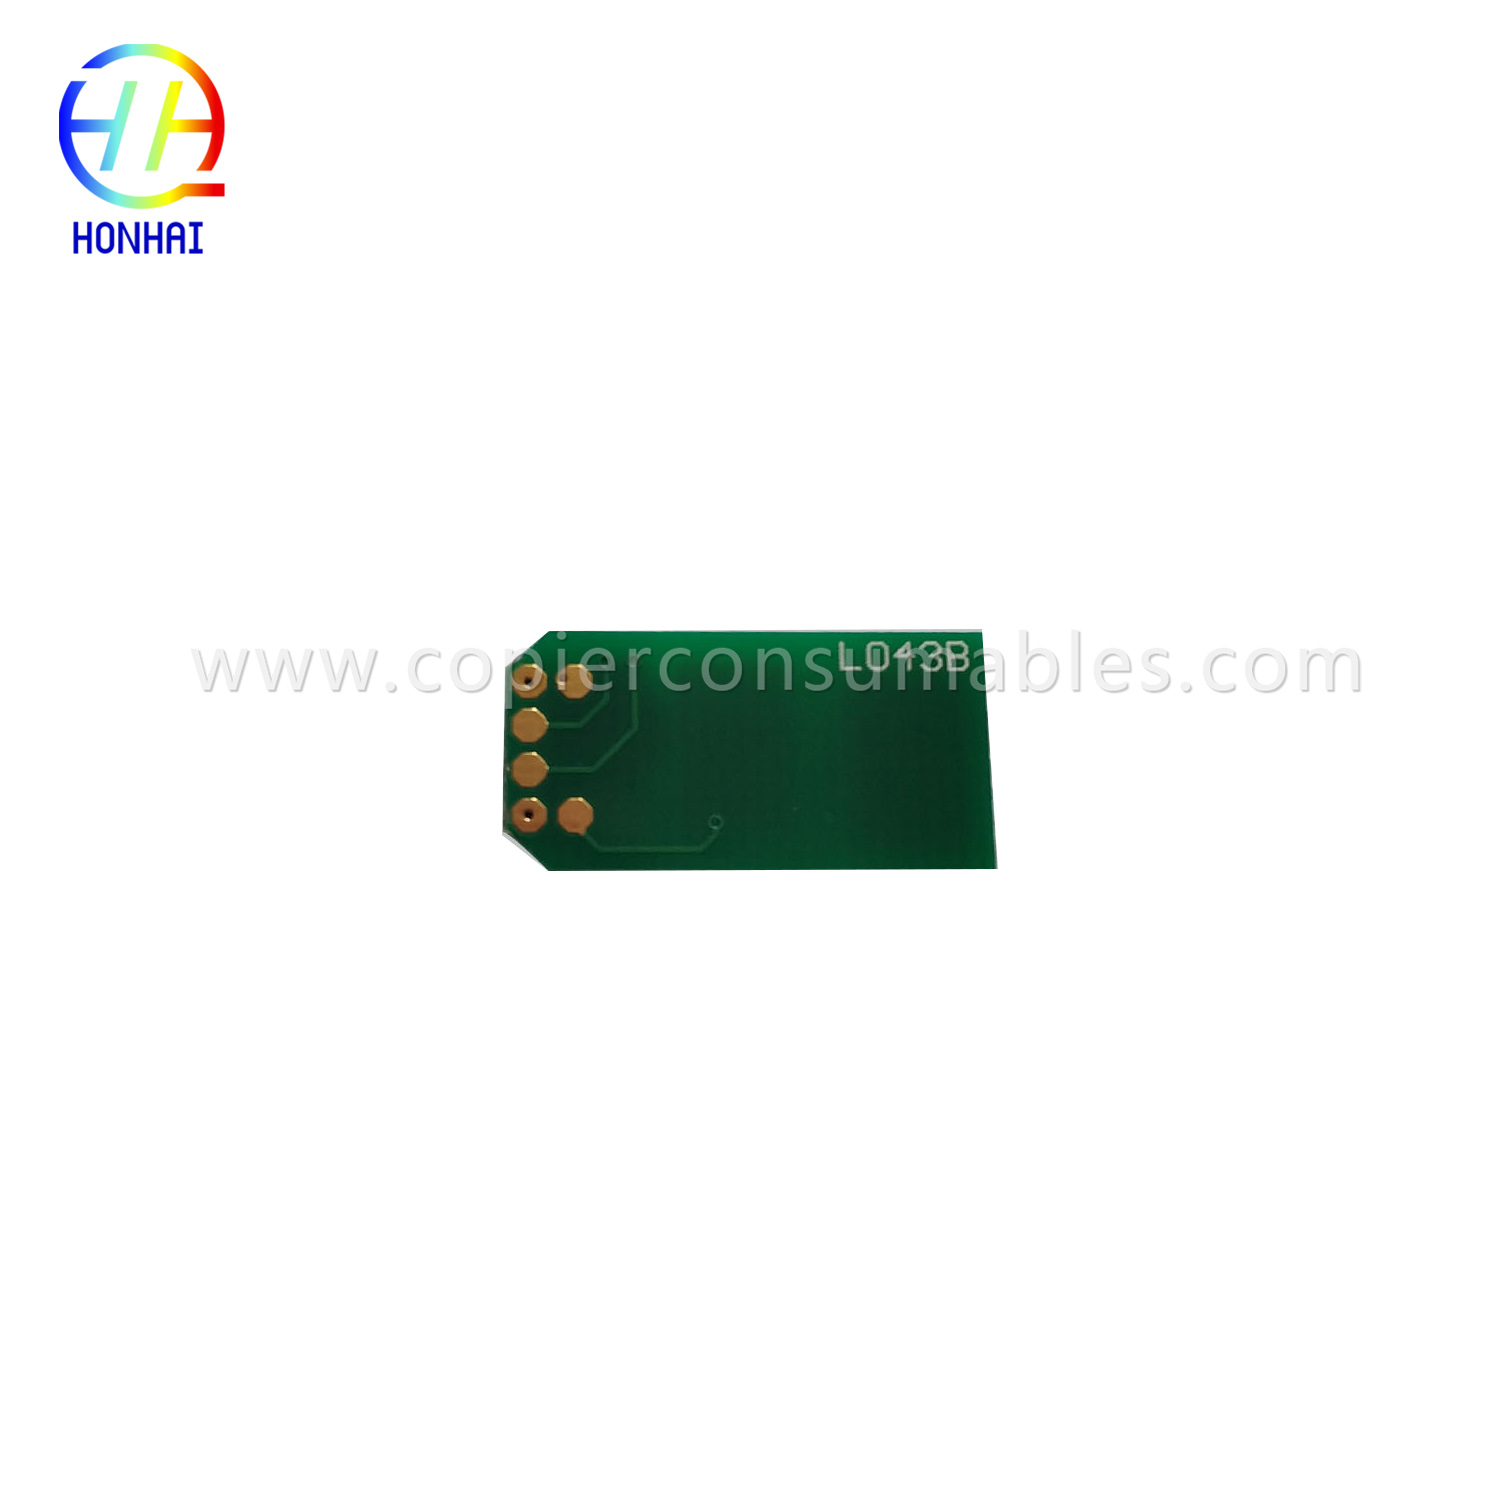 Toner Cartridge Chip for OKI B411 B431 MB461 MB471 MB491